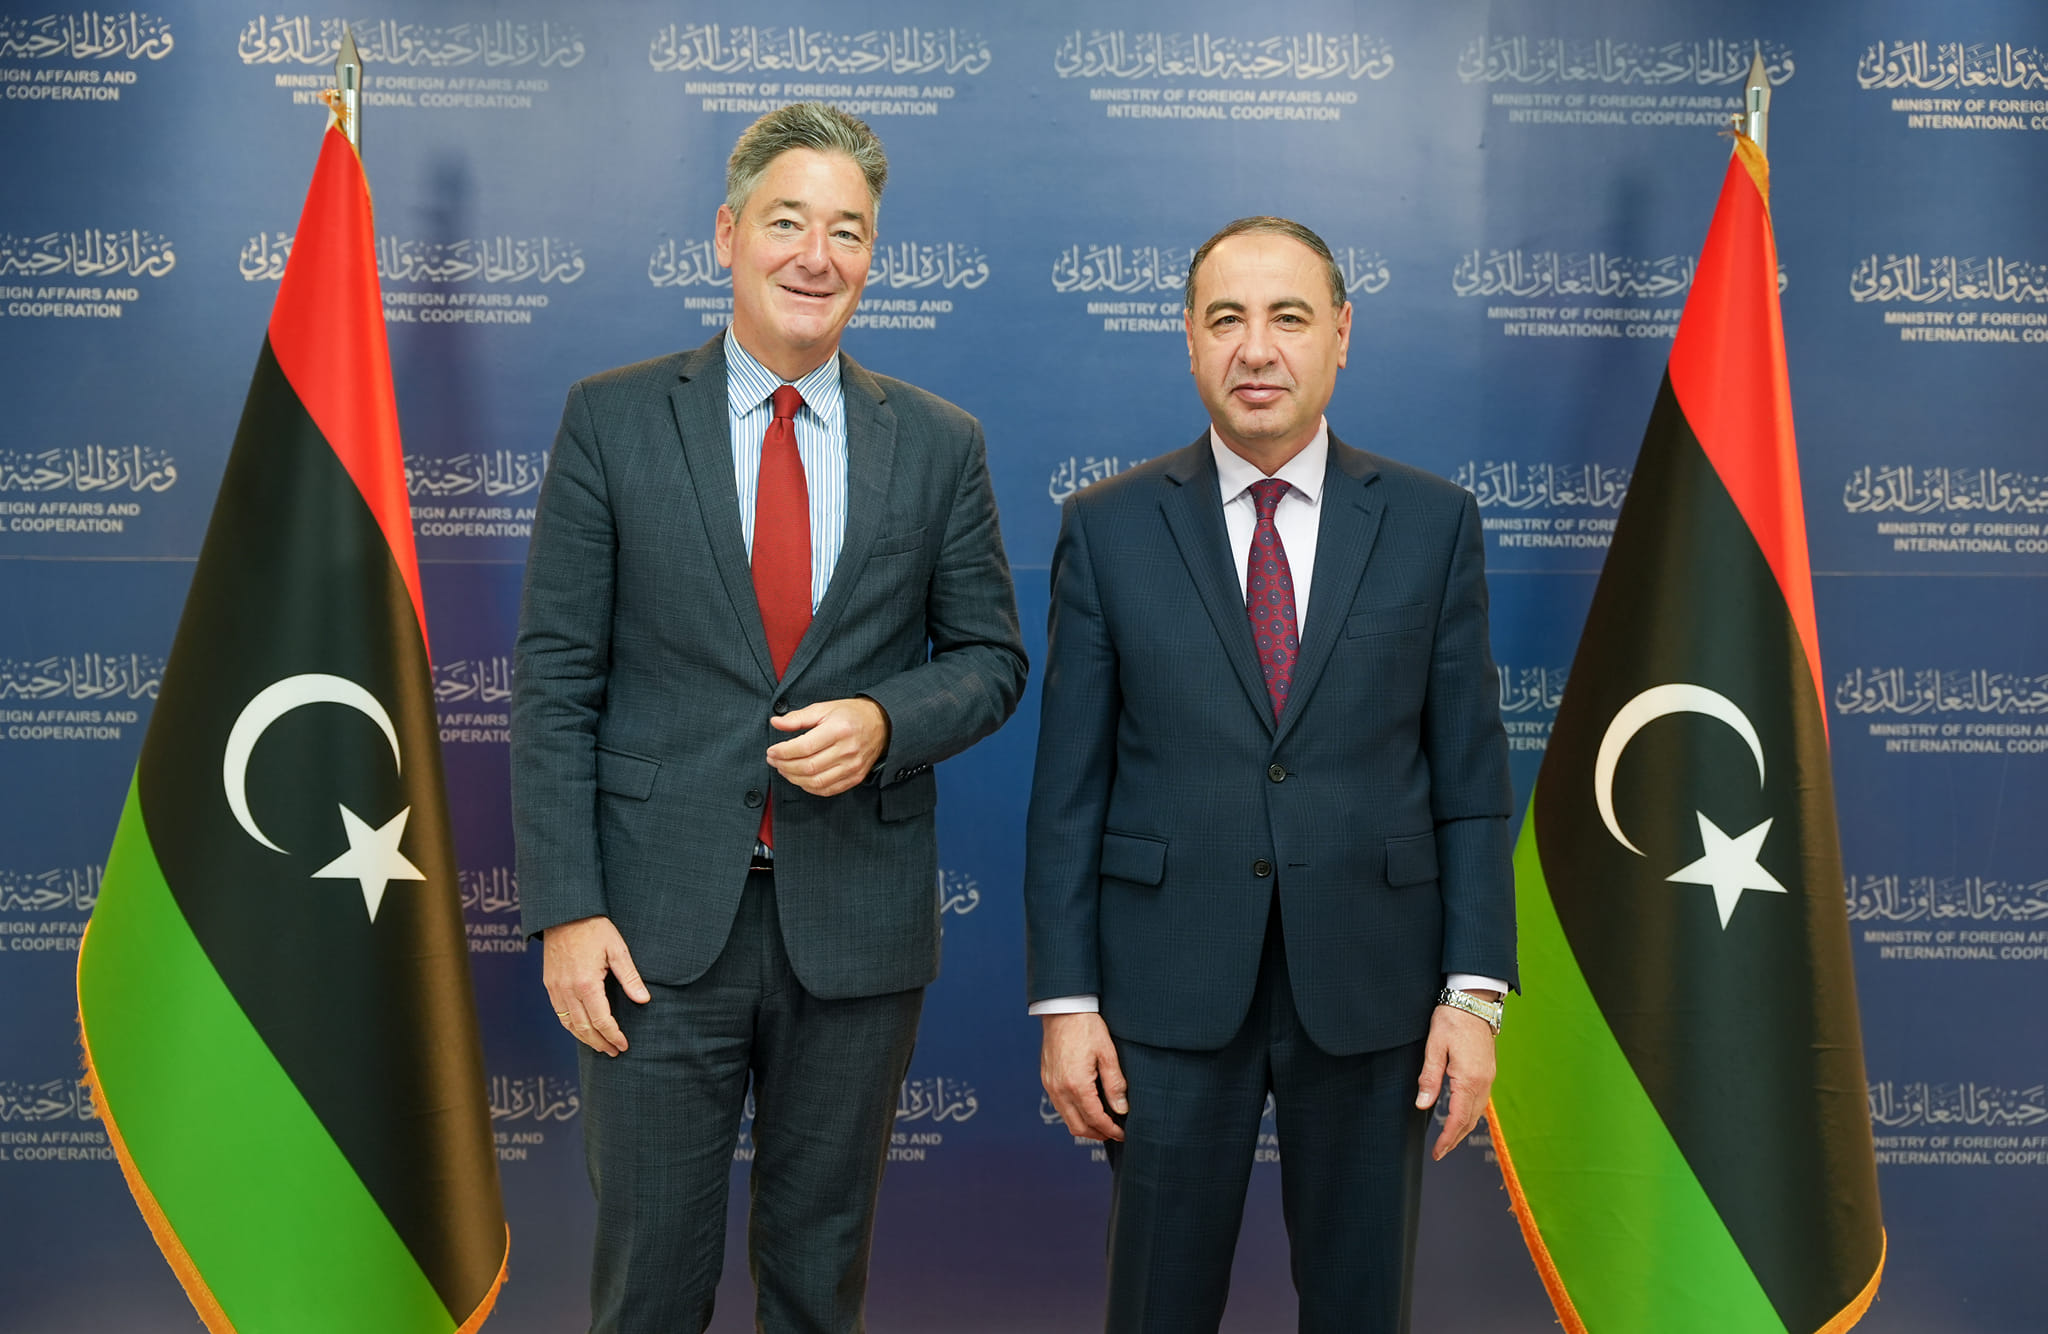   الباعور والسفير الألماني لدى ليبيا يبحثان مستجدات الأوضاع السياسية والأمنية على الساحة الليبية.